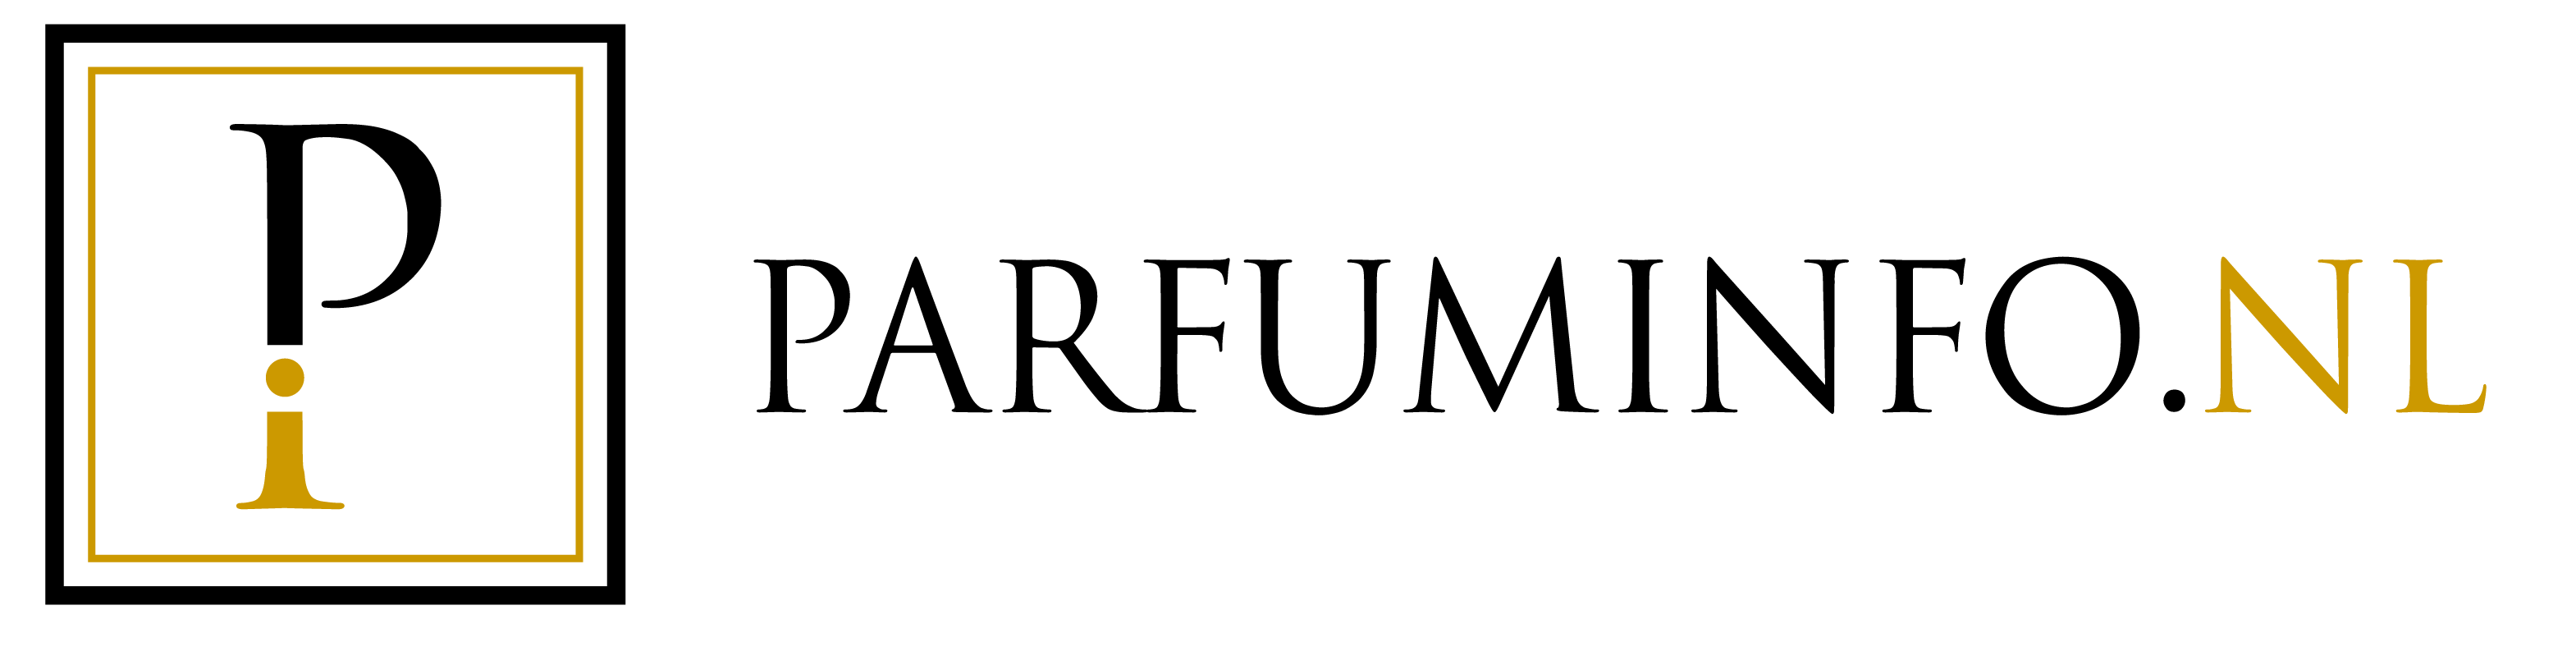 Parfuminfo logo website